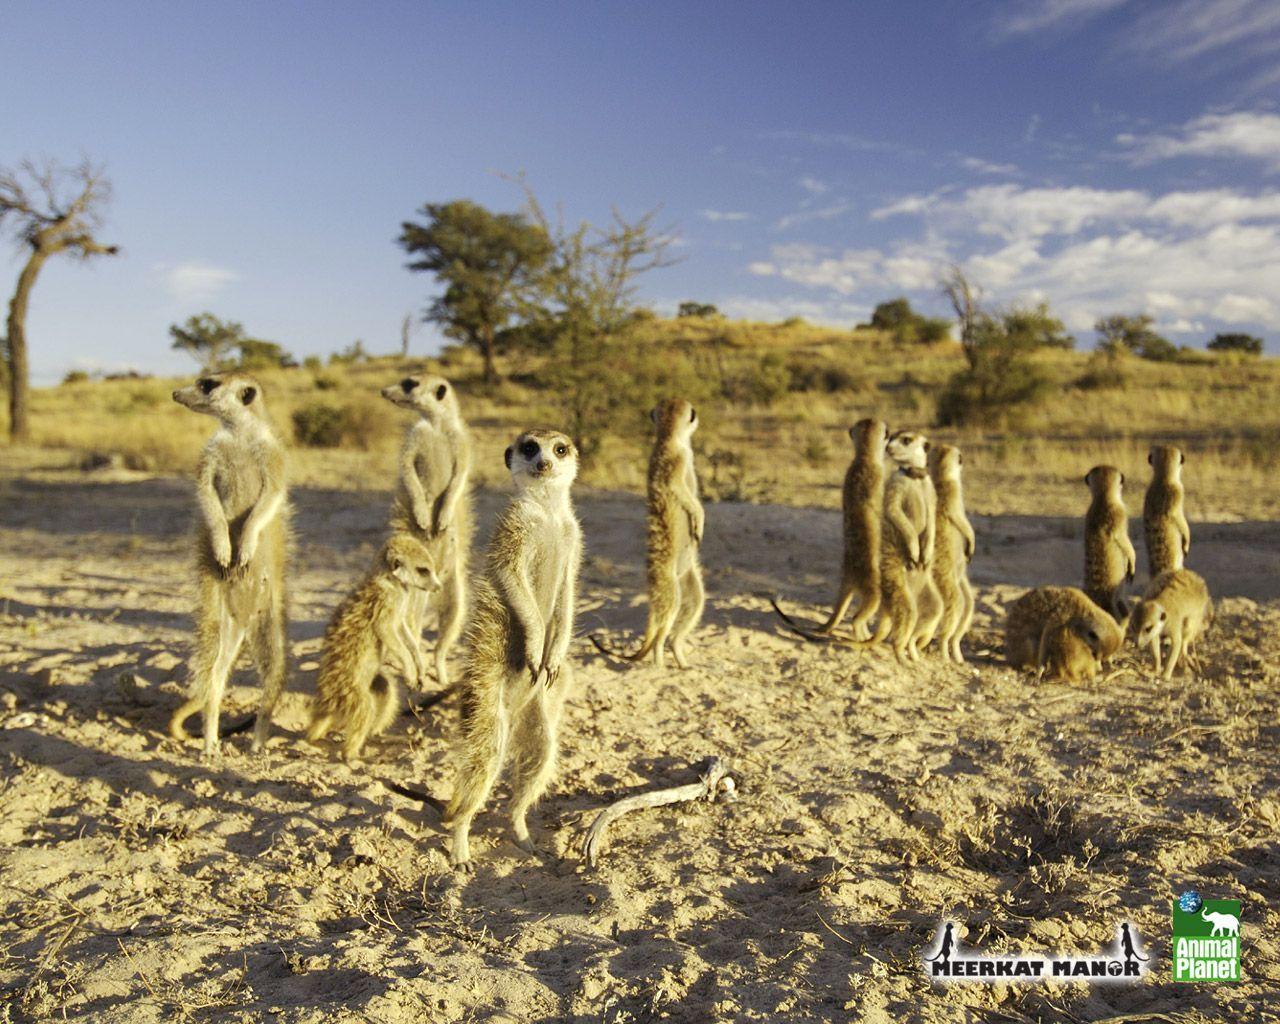 Meerkats Wallpaper Image & Picture